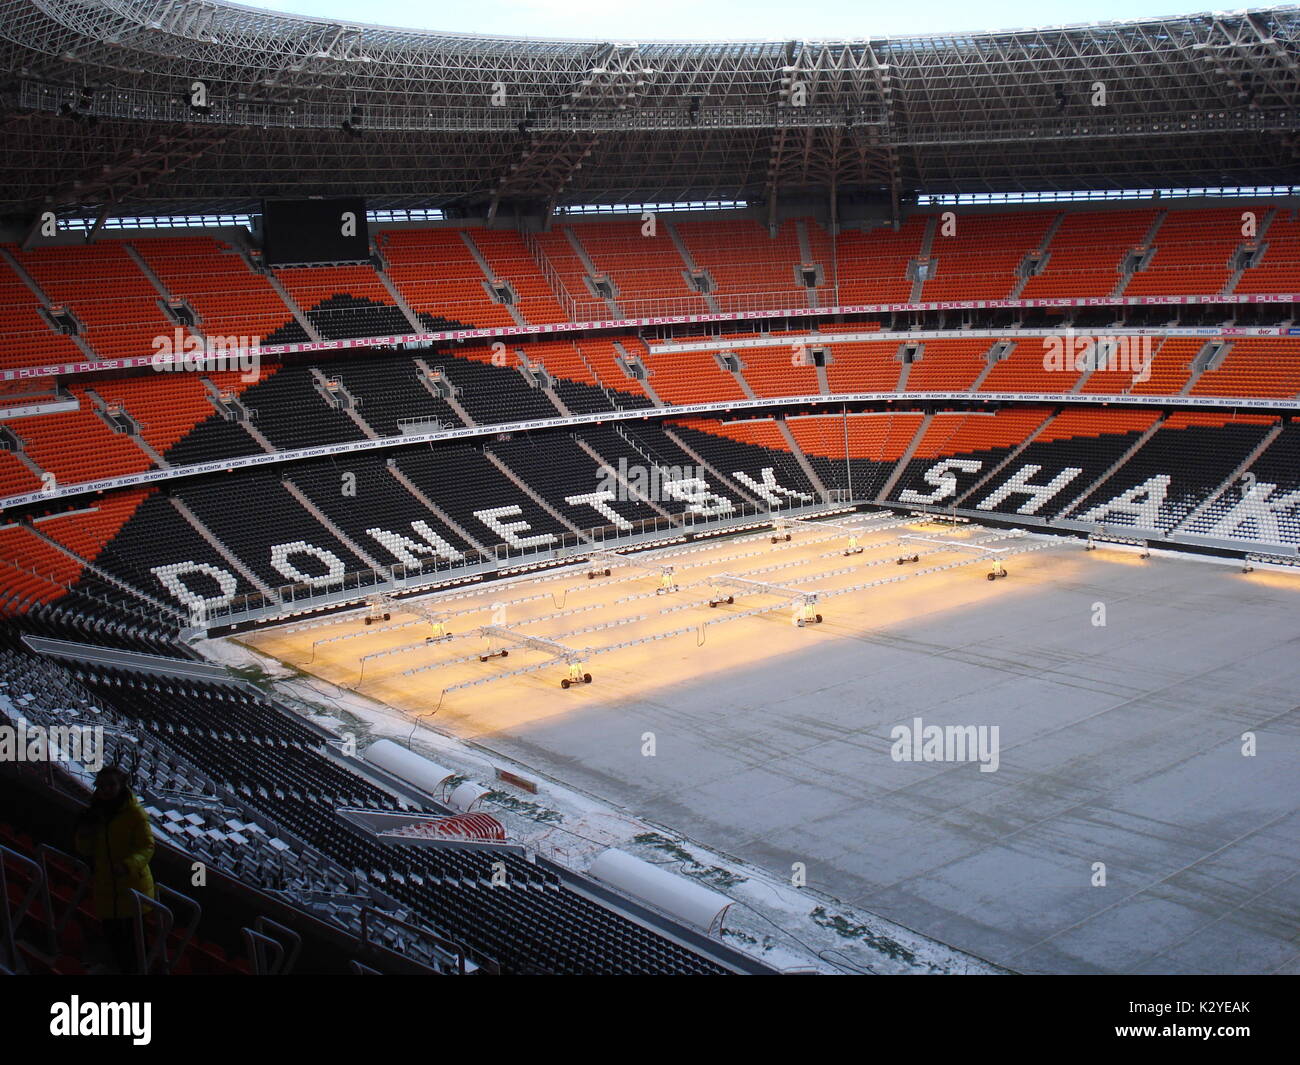 Tout nouveau stade de Donetsk, la Donbass Arena, a été utilisé par l'équipe de football Shakhtior avant la guerre. Le champ est chauffée en hiver Banque D'Images